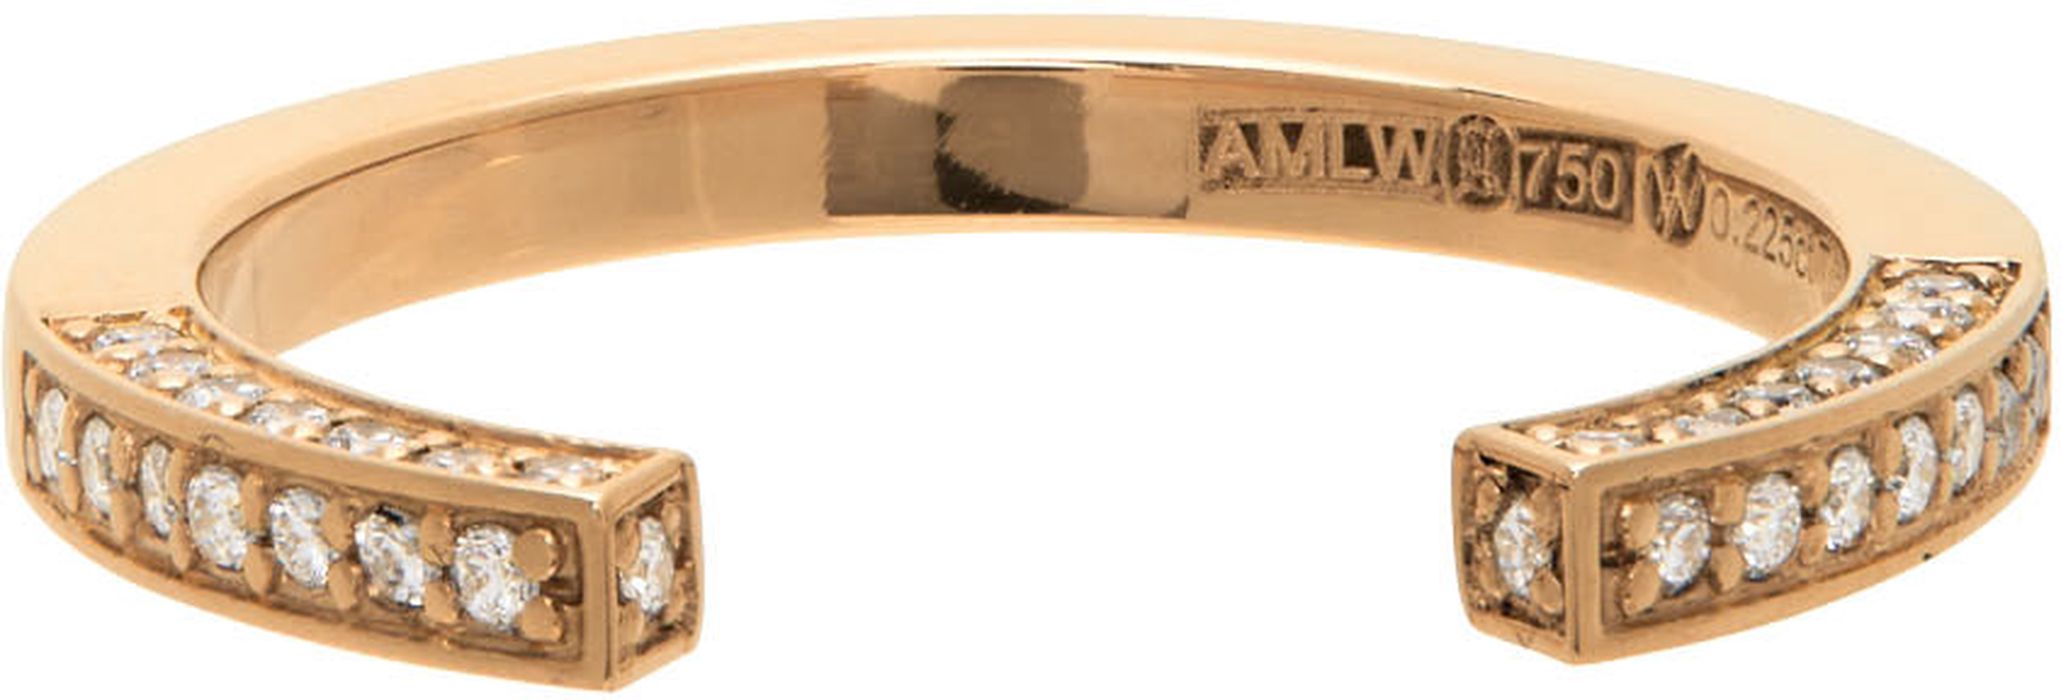 Annette Welander Gold Diamond Ring